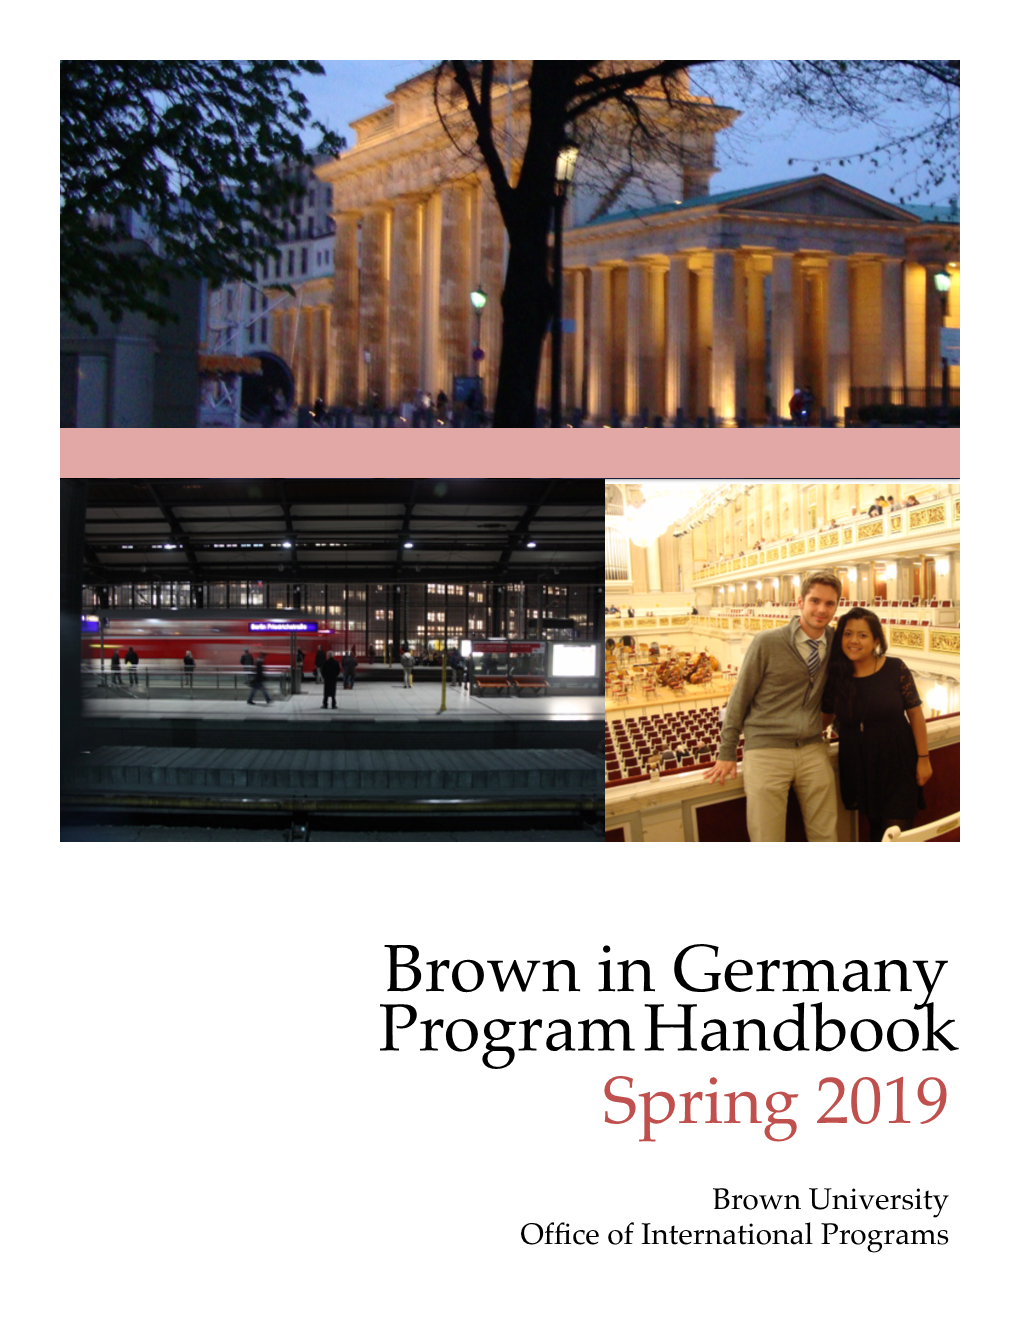 Brown in Berlin Handbook Spring 2019